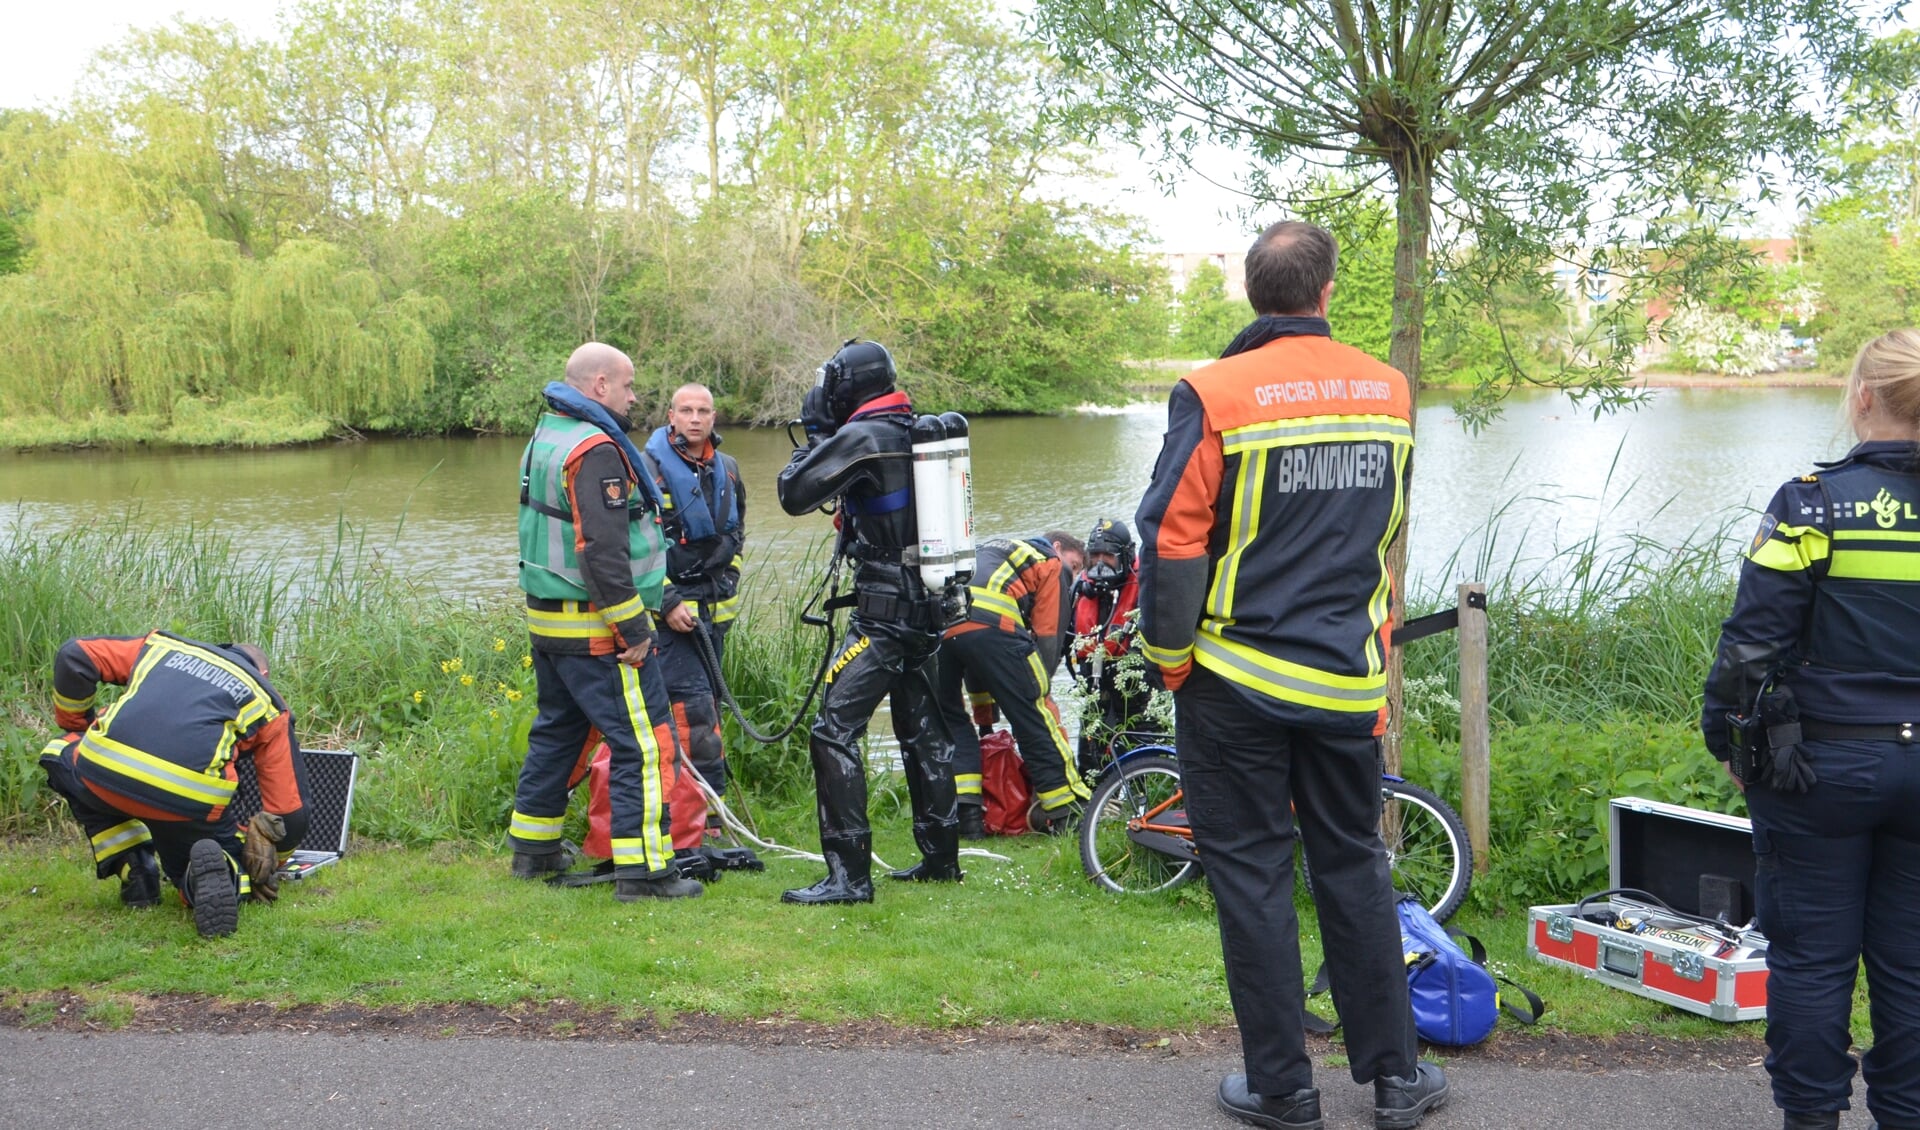 De hulpdiensten werden gealarmeerd nadat een kinderfietsje aan de zijkant van het water was aangetroffen. (foto: Rob de Jong/112hm.nl) 